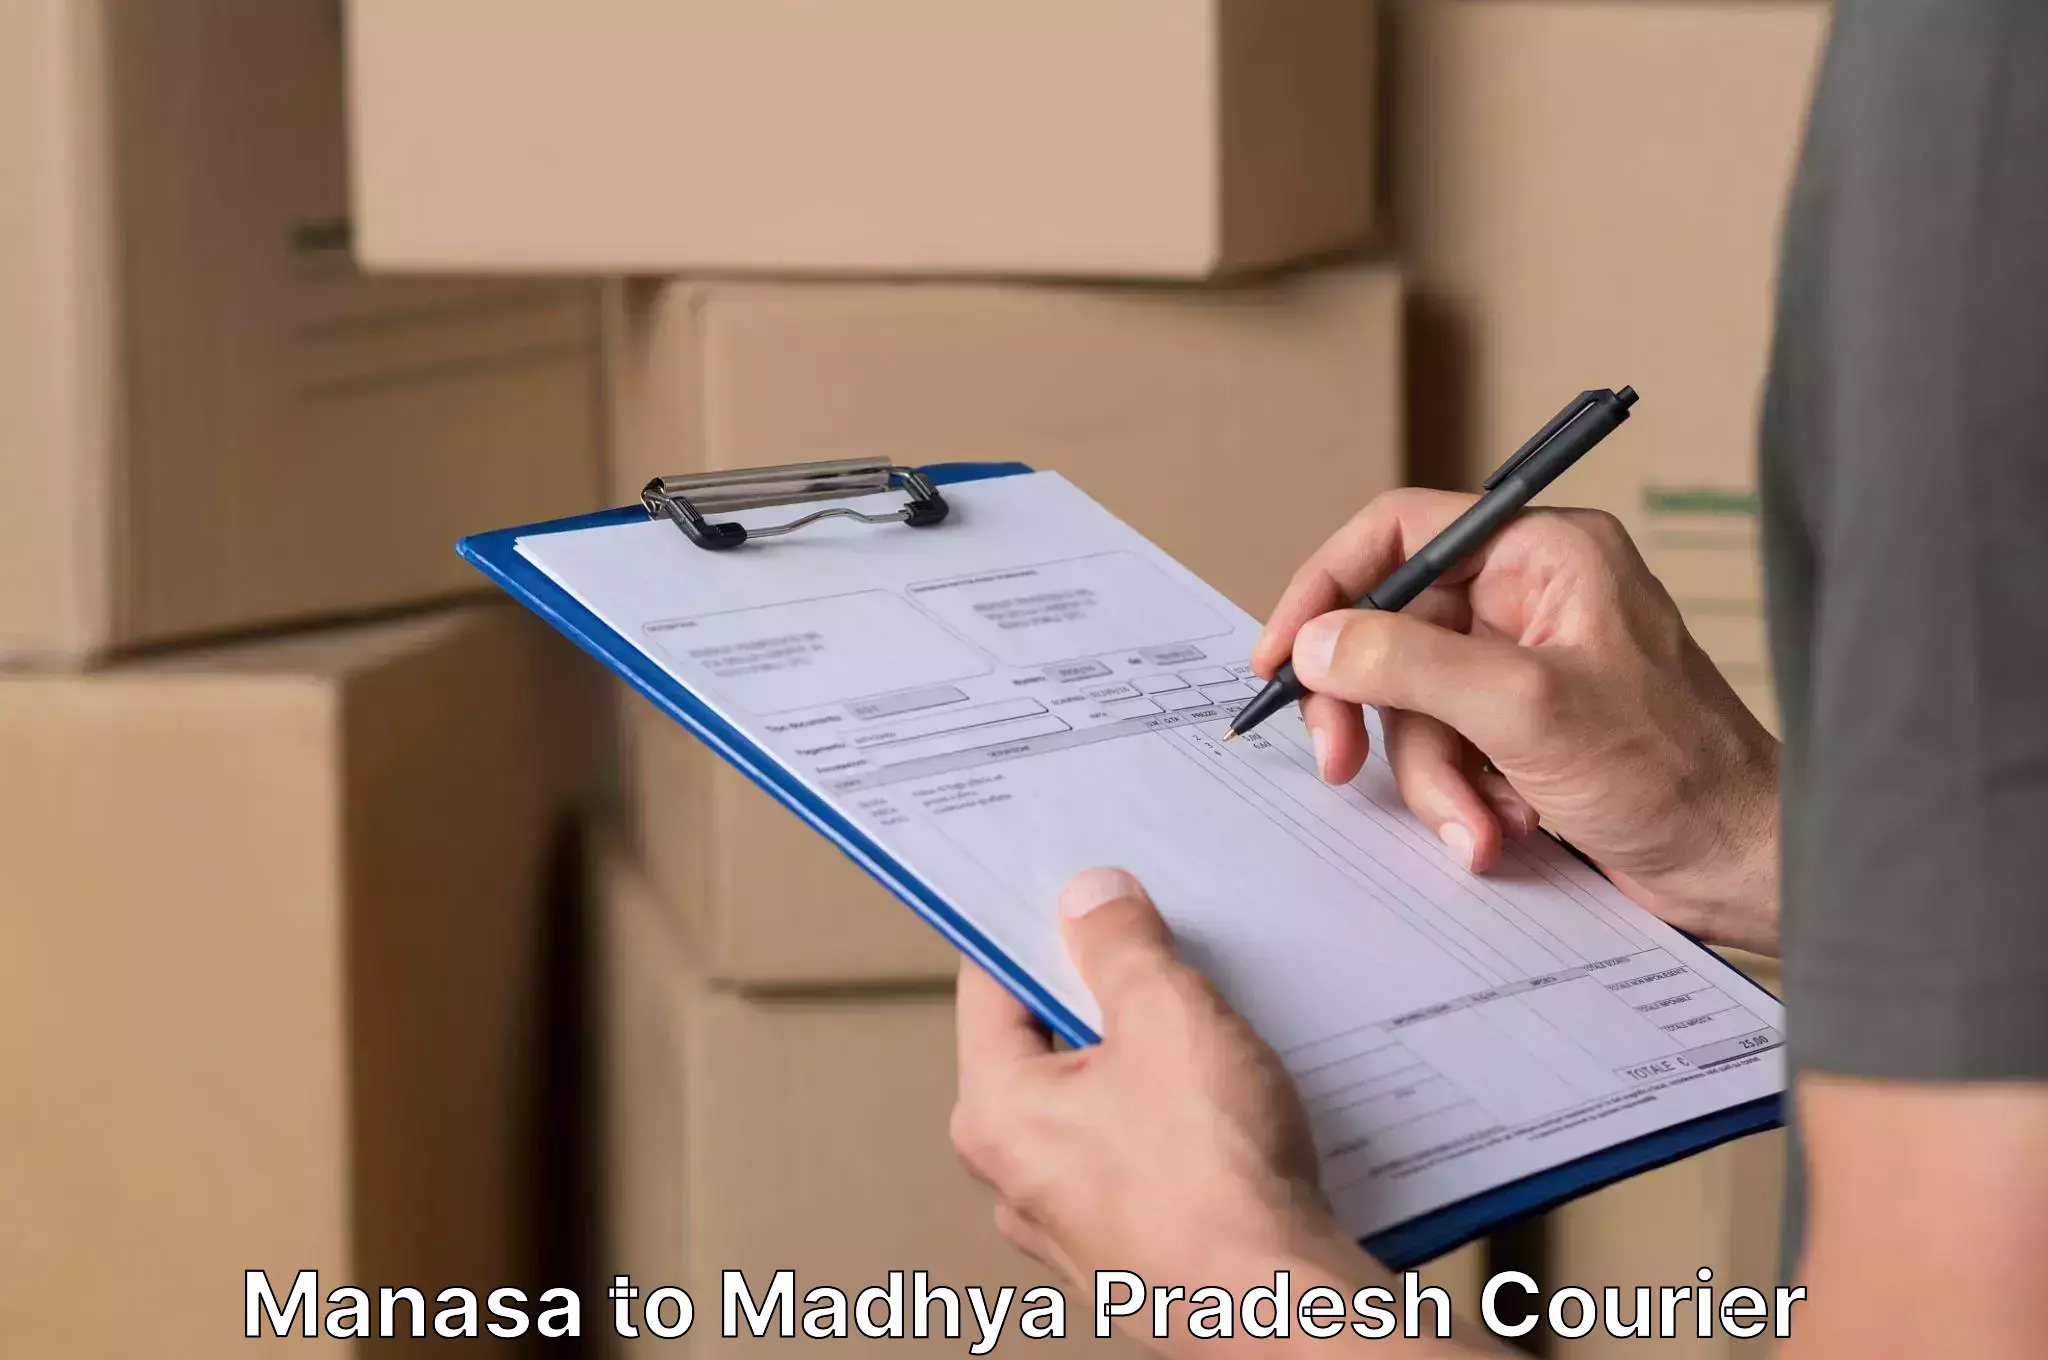 Home moving experts Manasa to Amarwara